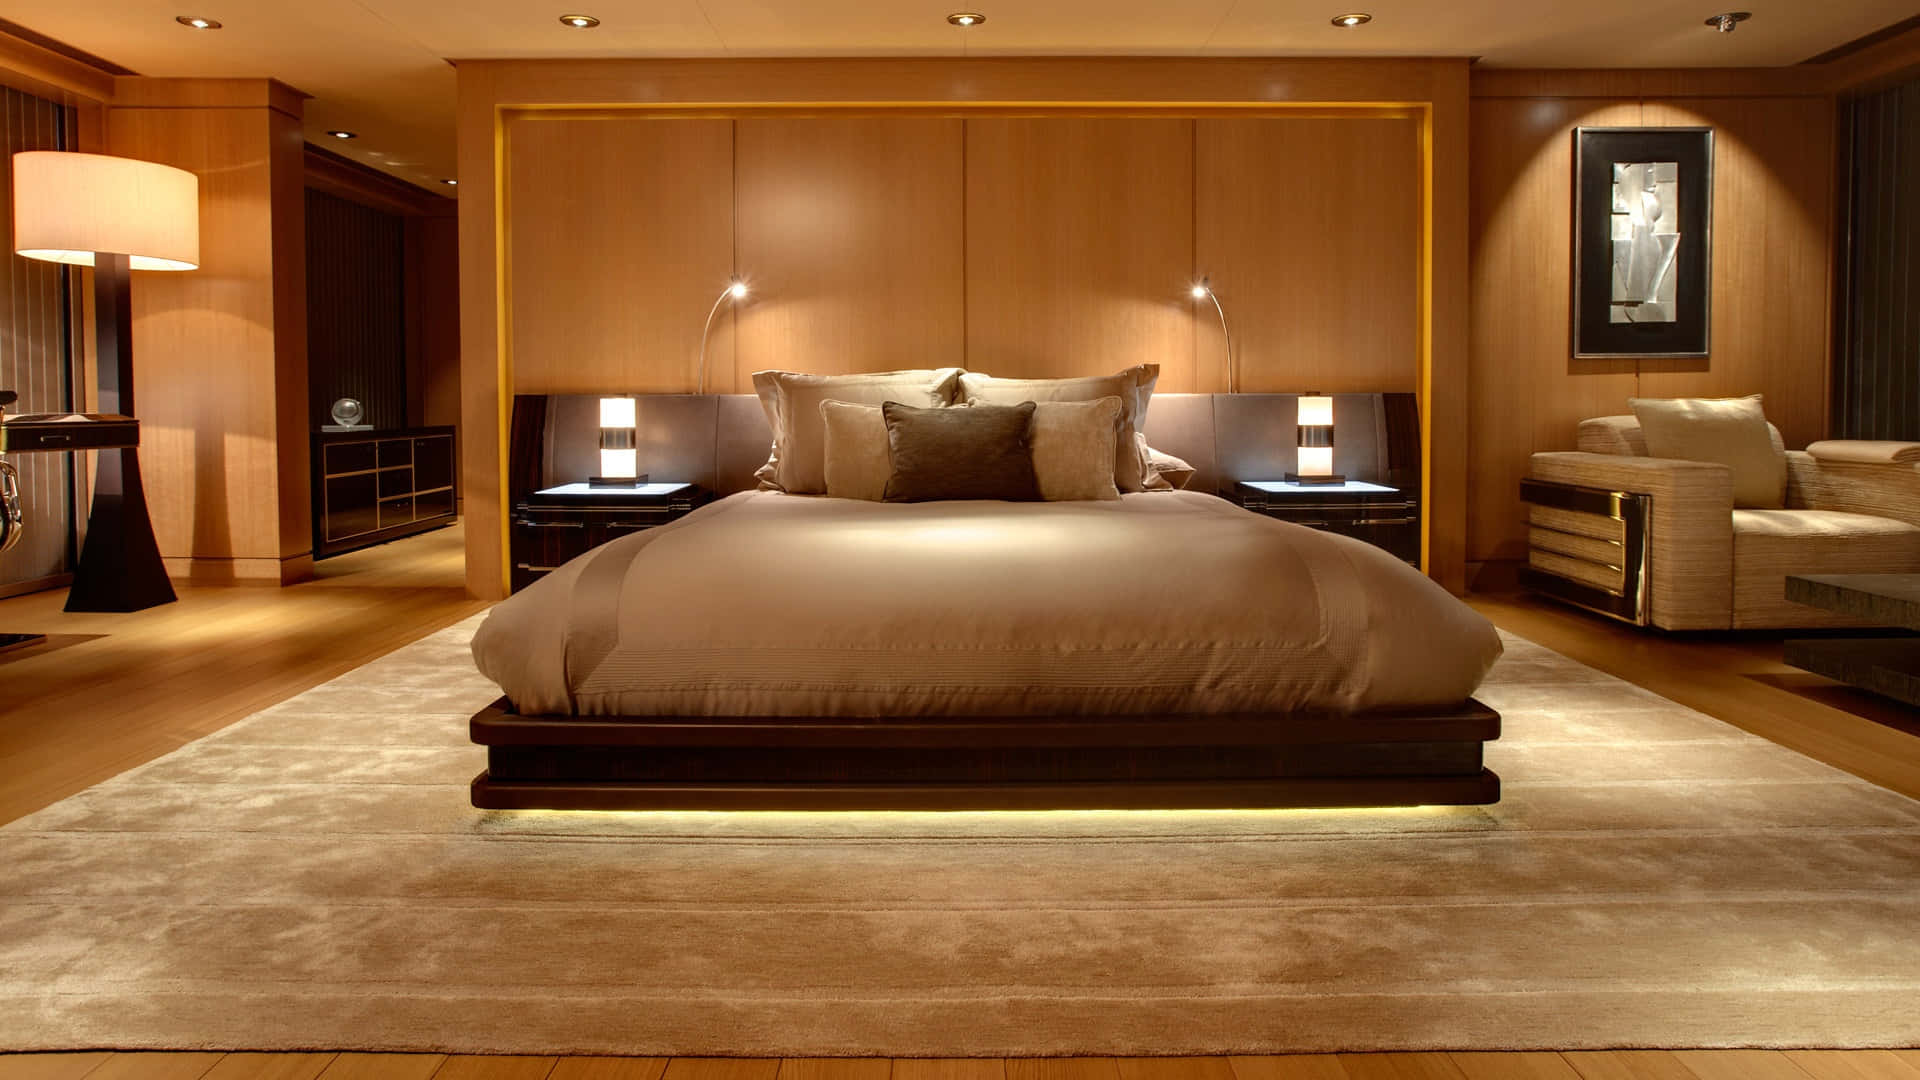 Elegantly Designed Hotel Room with Modern Furniture Wallpaper